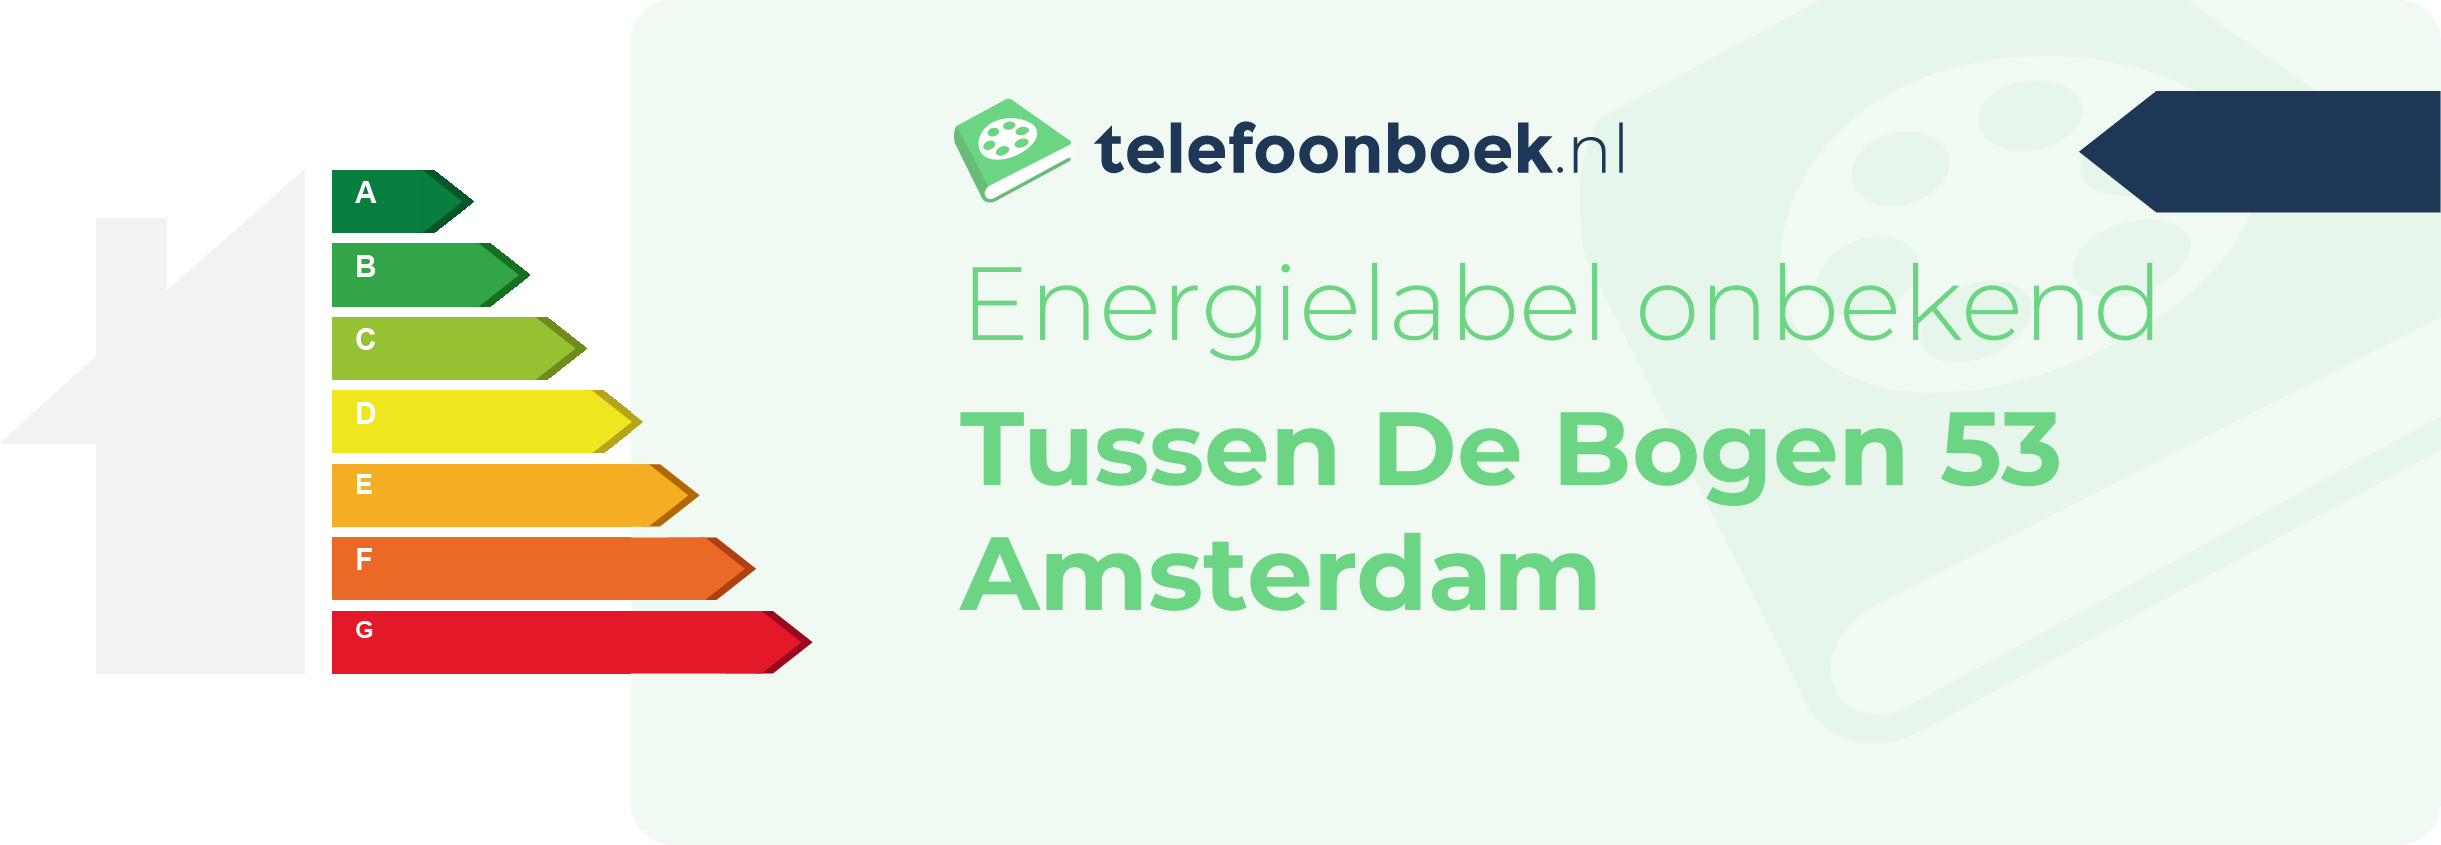 Energielabel Tussen De Bogen 53 Amsterdam